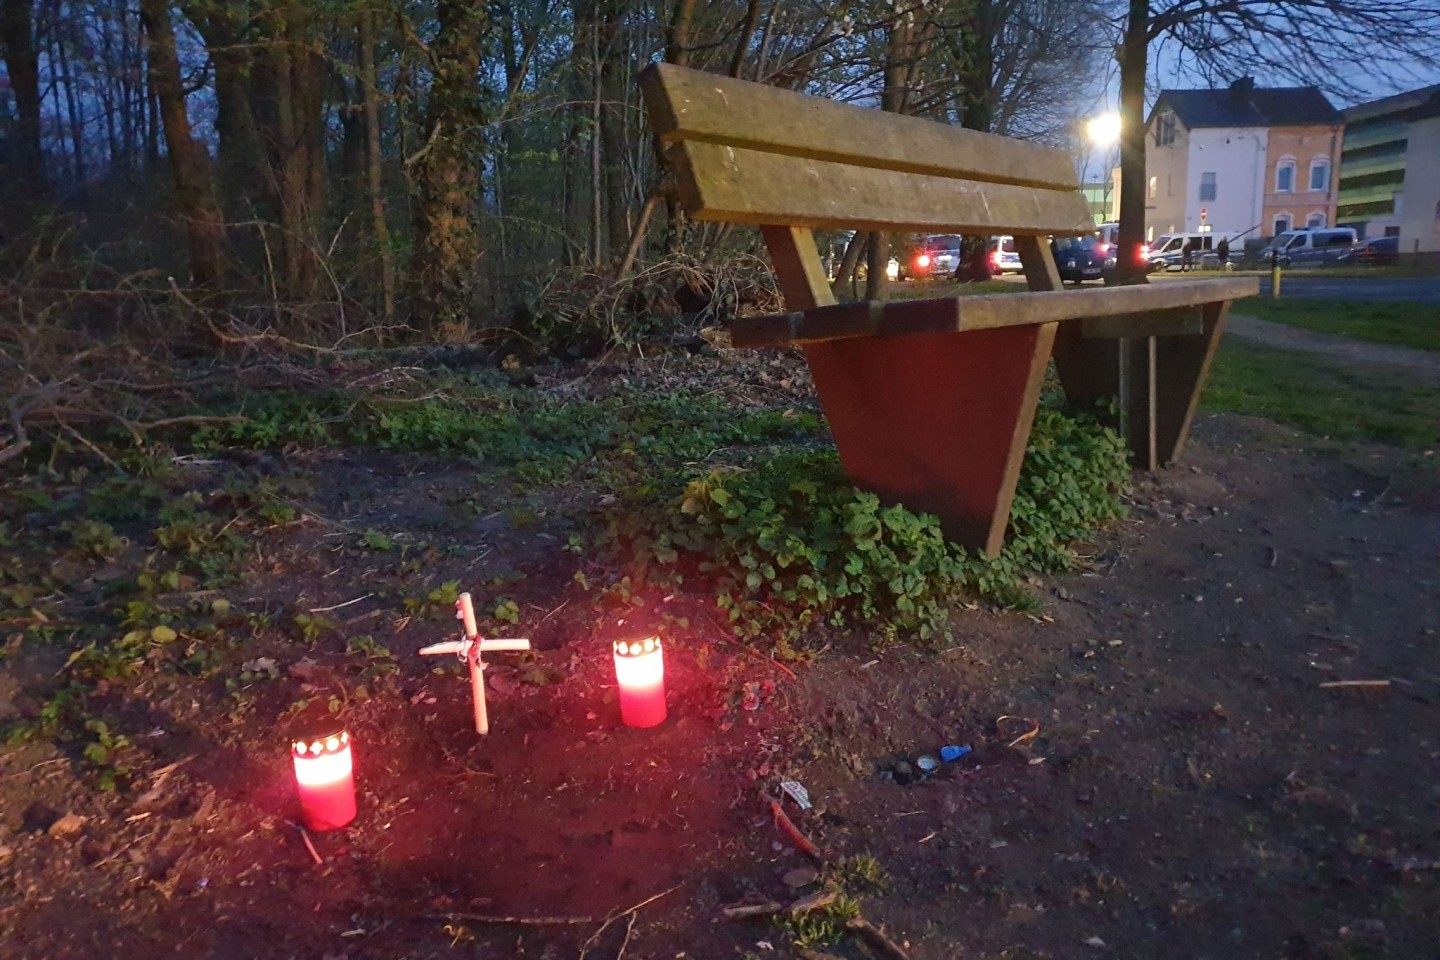 An der Stelle, an der der tote Säugling gefunden wurde, stehen ein Kreuz und Kerzen.